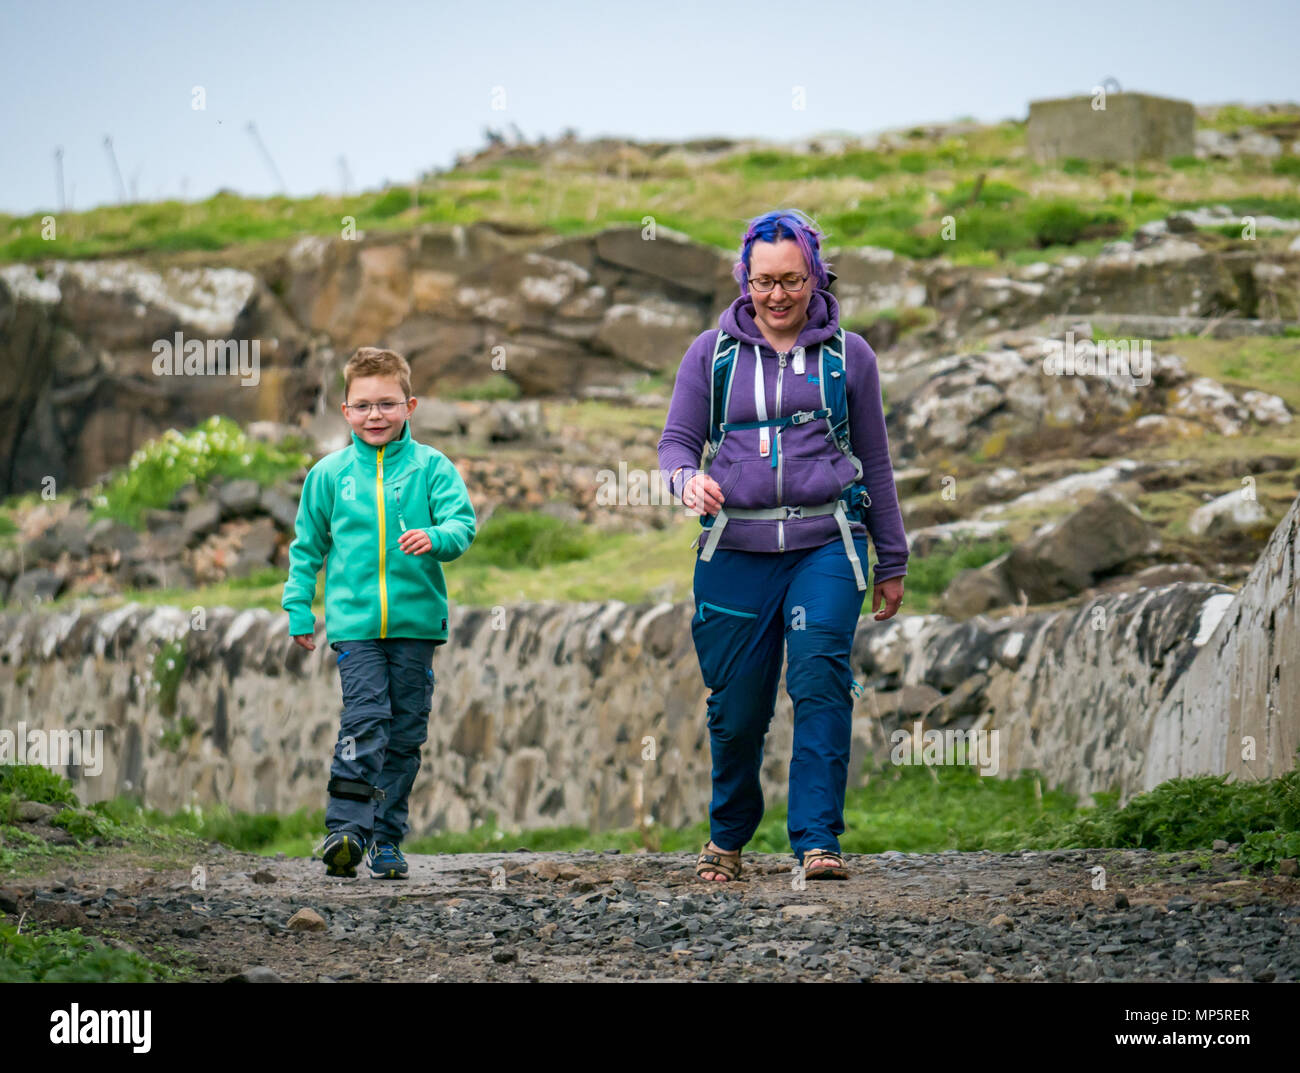 Frau mit gefärbten Haaren und lächelnde Junge mit Brille und Bein Klammer  zu Fuß auf die Insel kann, Schottland, Großbritannien Stockfotografie -  Alamy